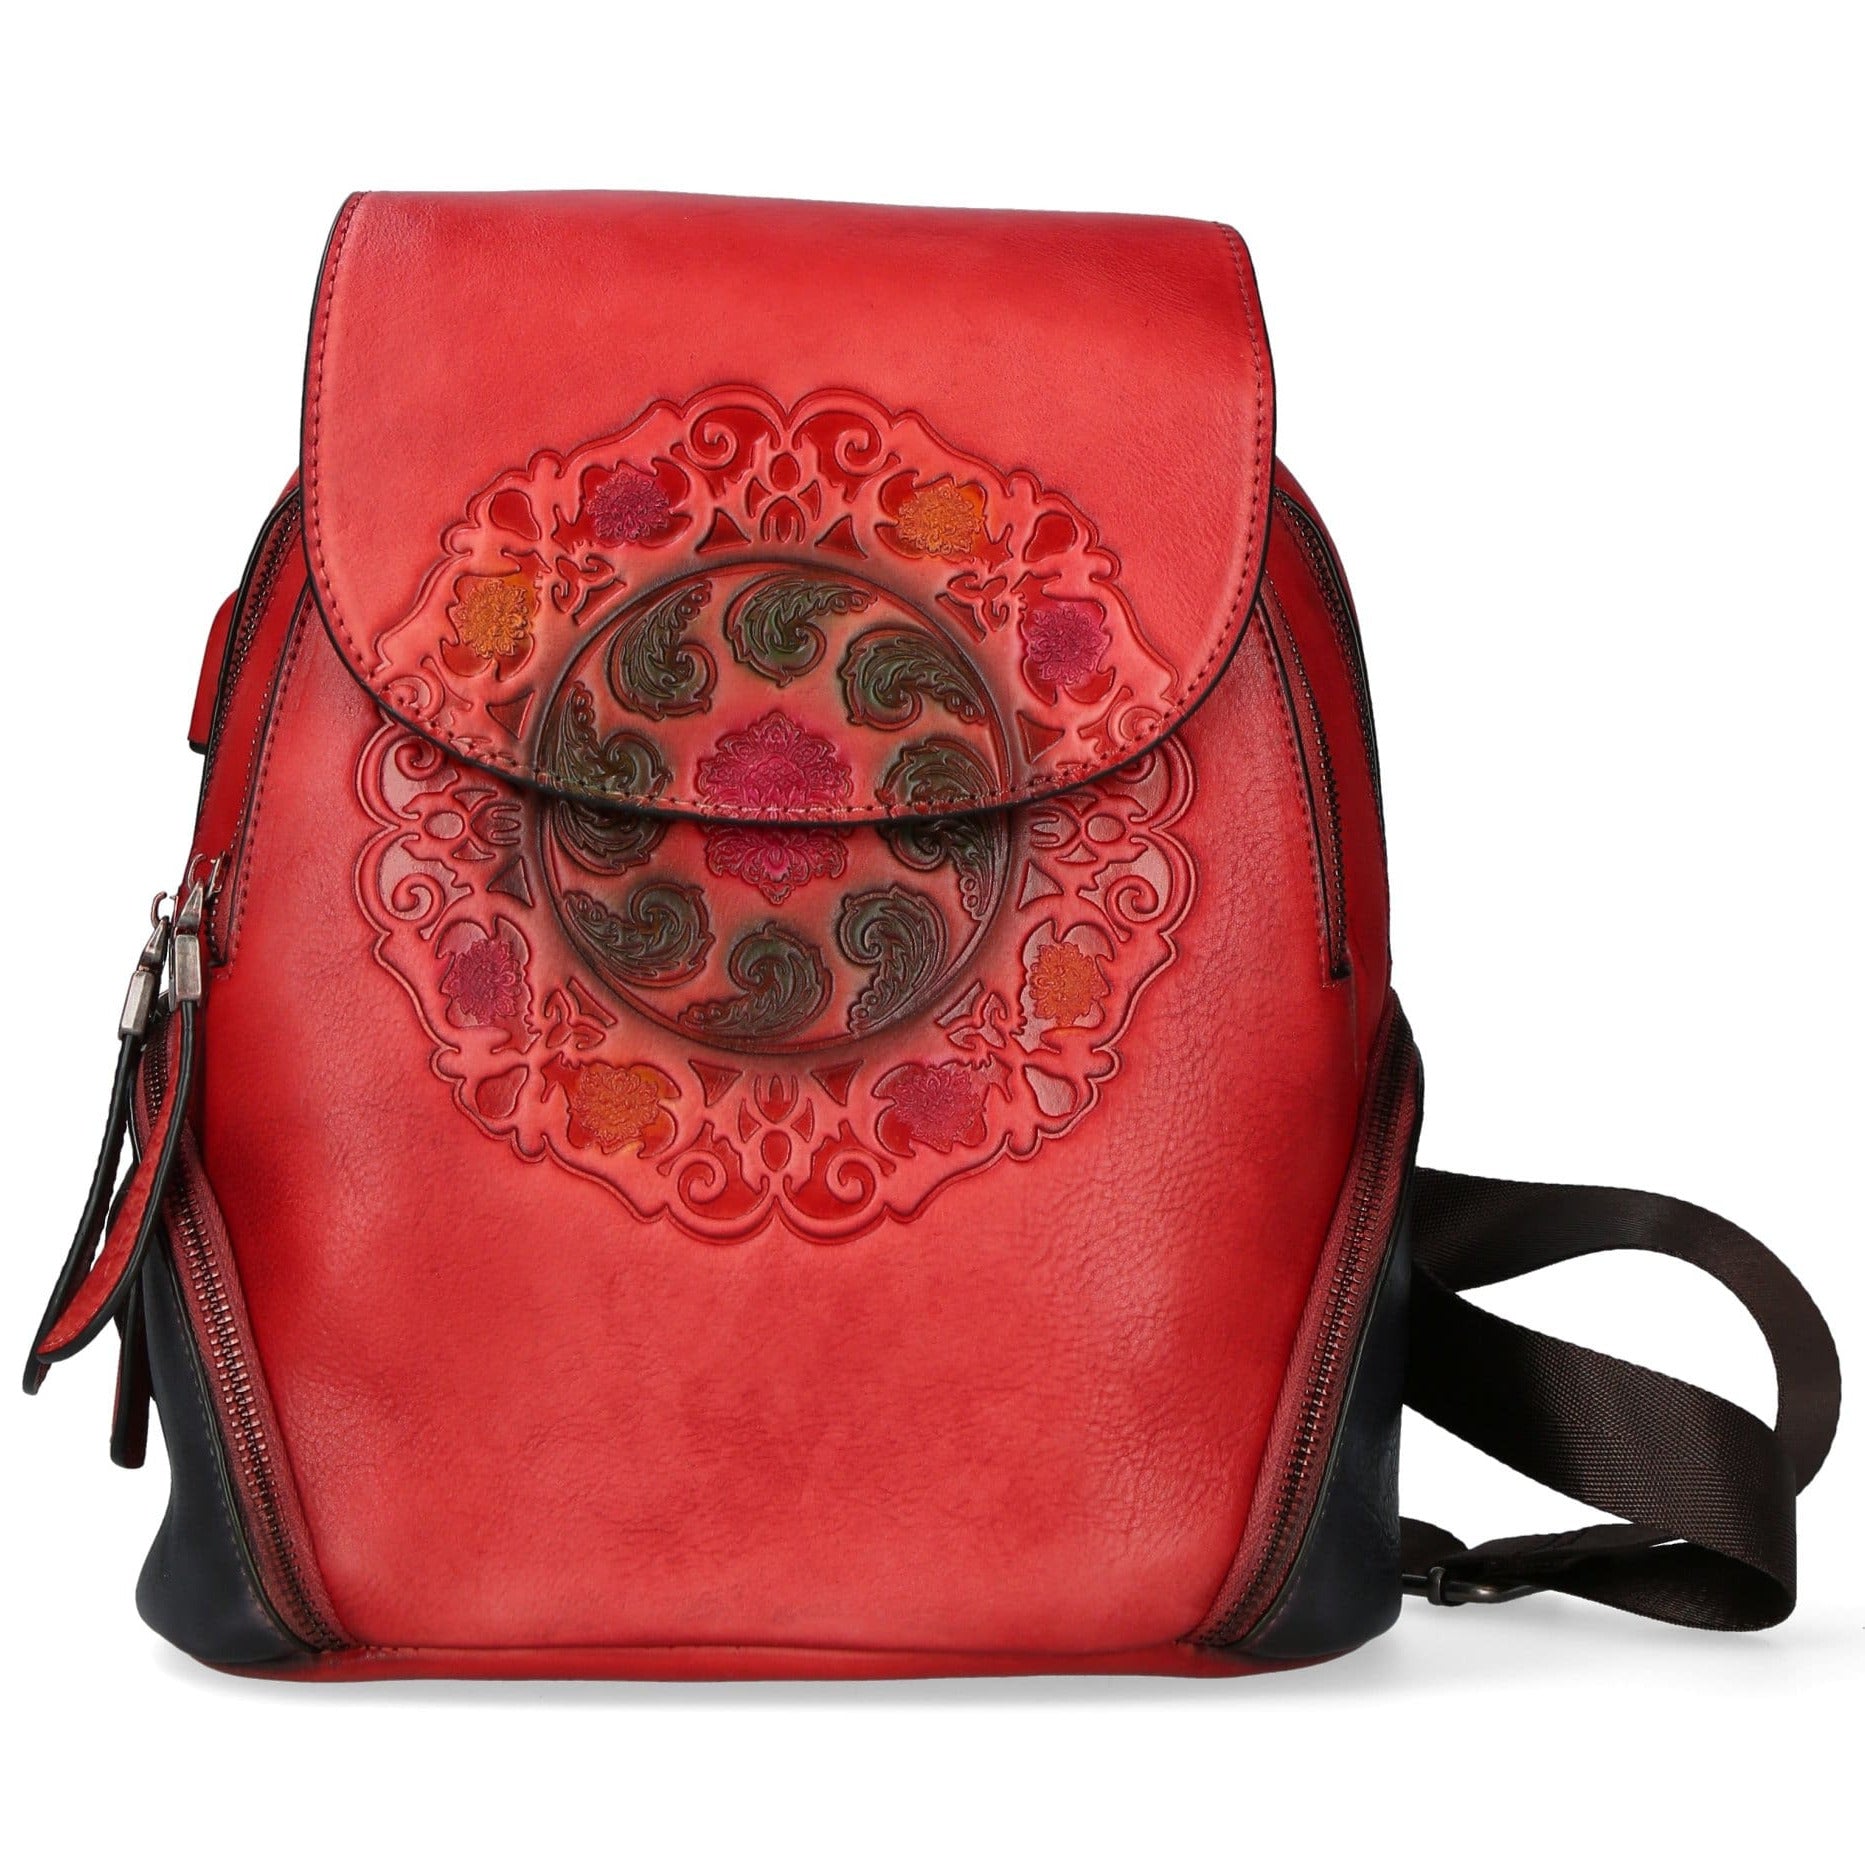 Dryades ryggsäck i läder - röd - väska